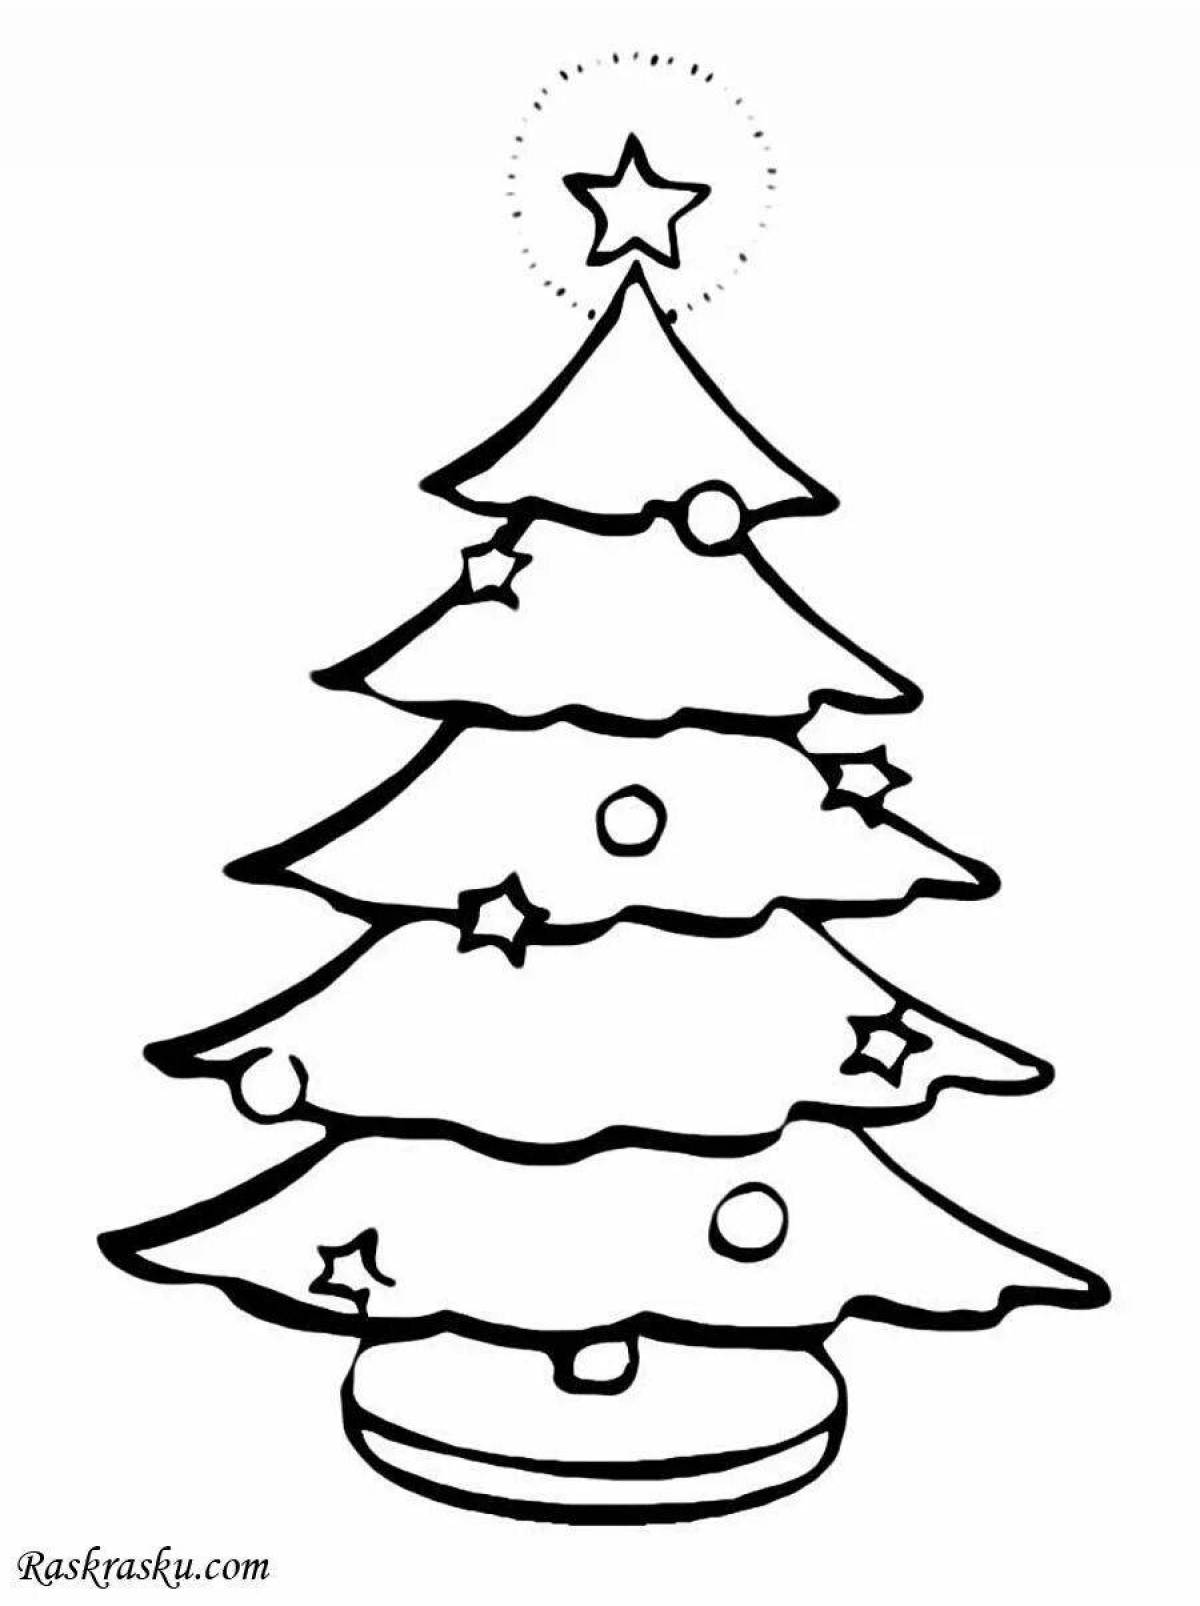 Рисунок лучистой рождественской елки